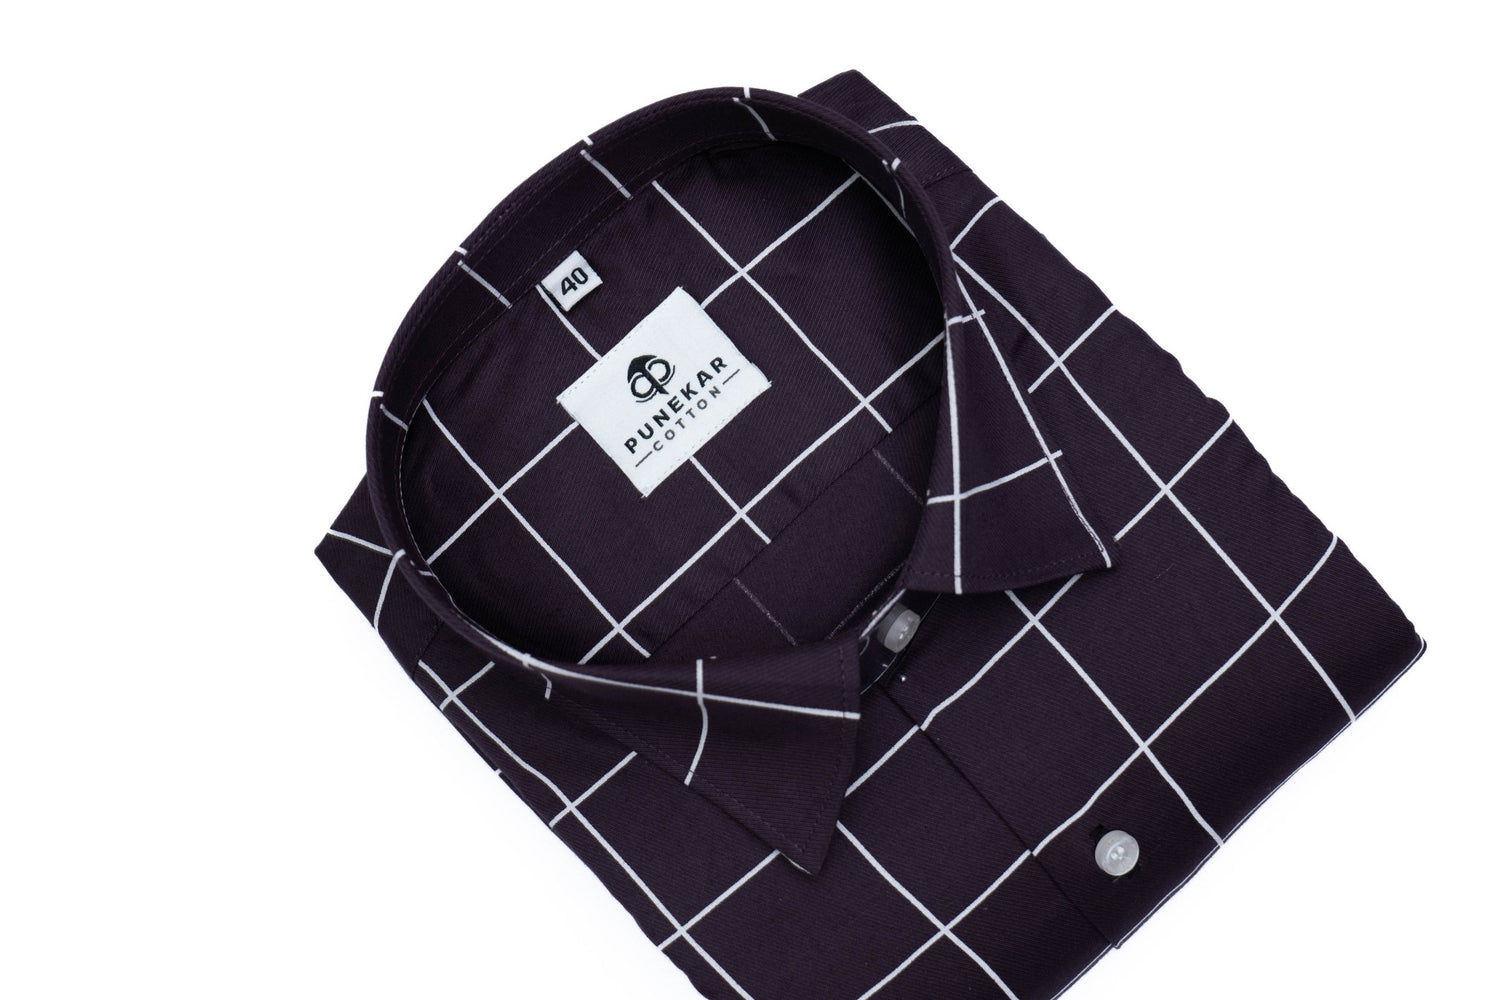 Dark Purple Color Big Checks Cotton Shirts For Men - Punekar Cotton